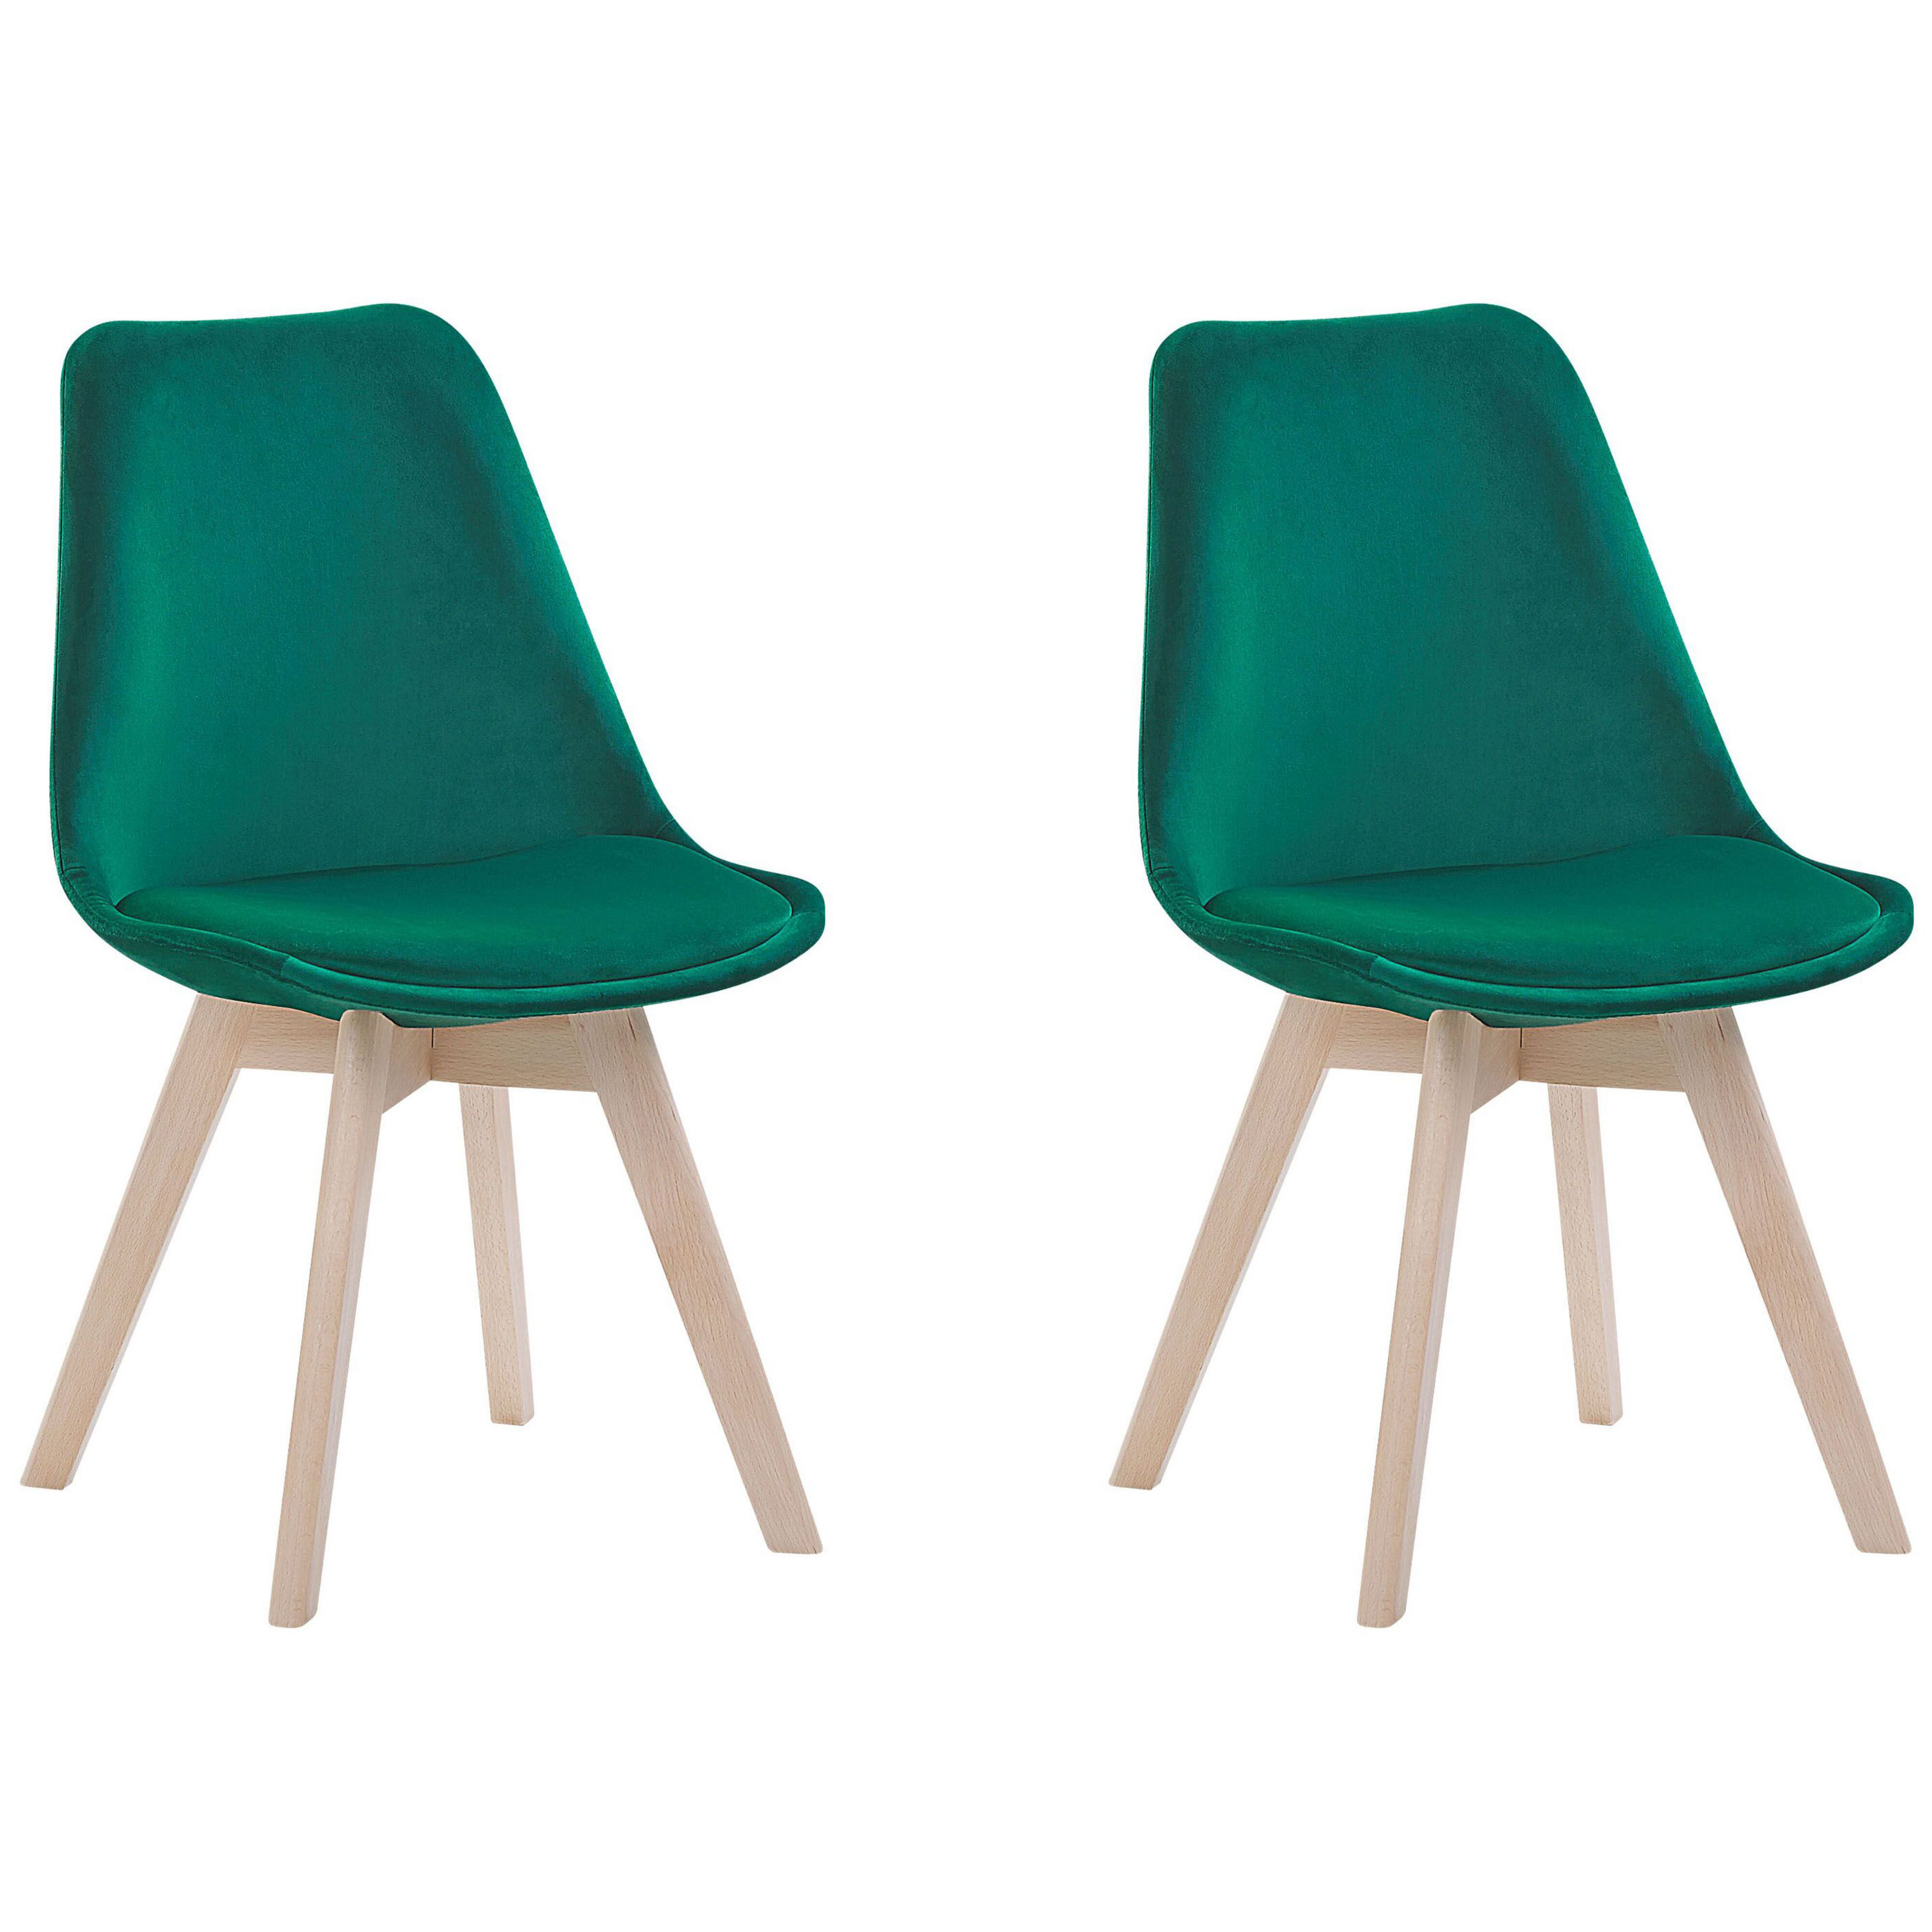 Beliani Set of 2 Dining Chairs Green Velvet Upholstery Seat Sleek Wooden Legs Modern Design